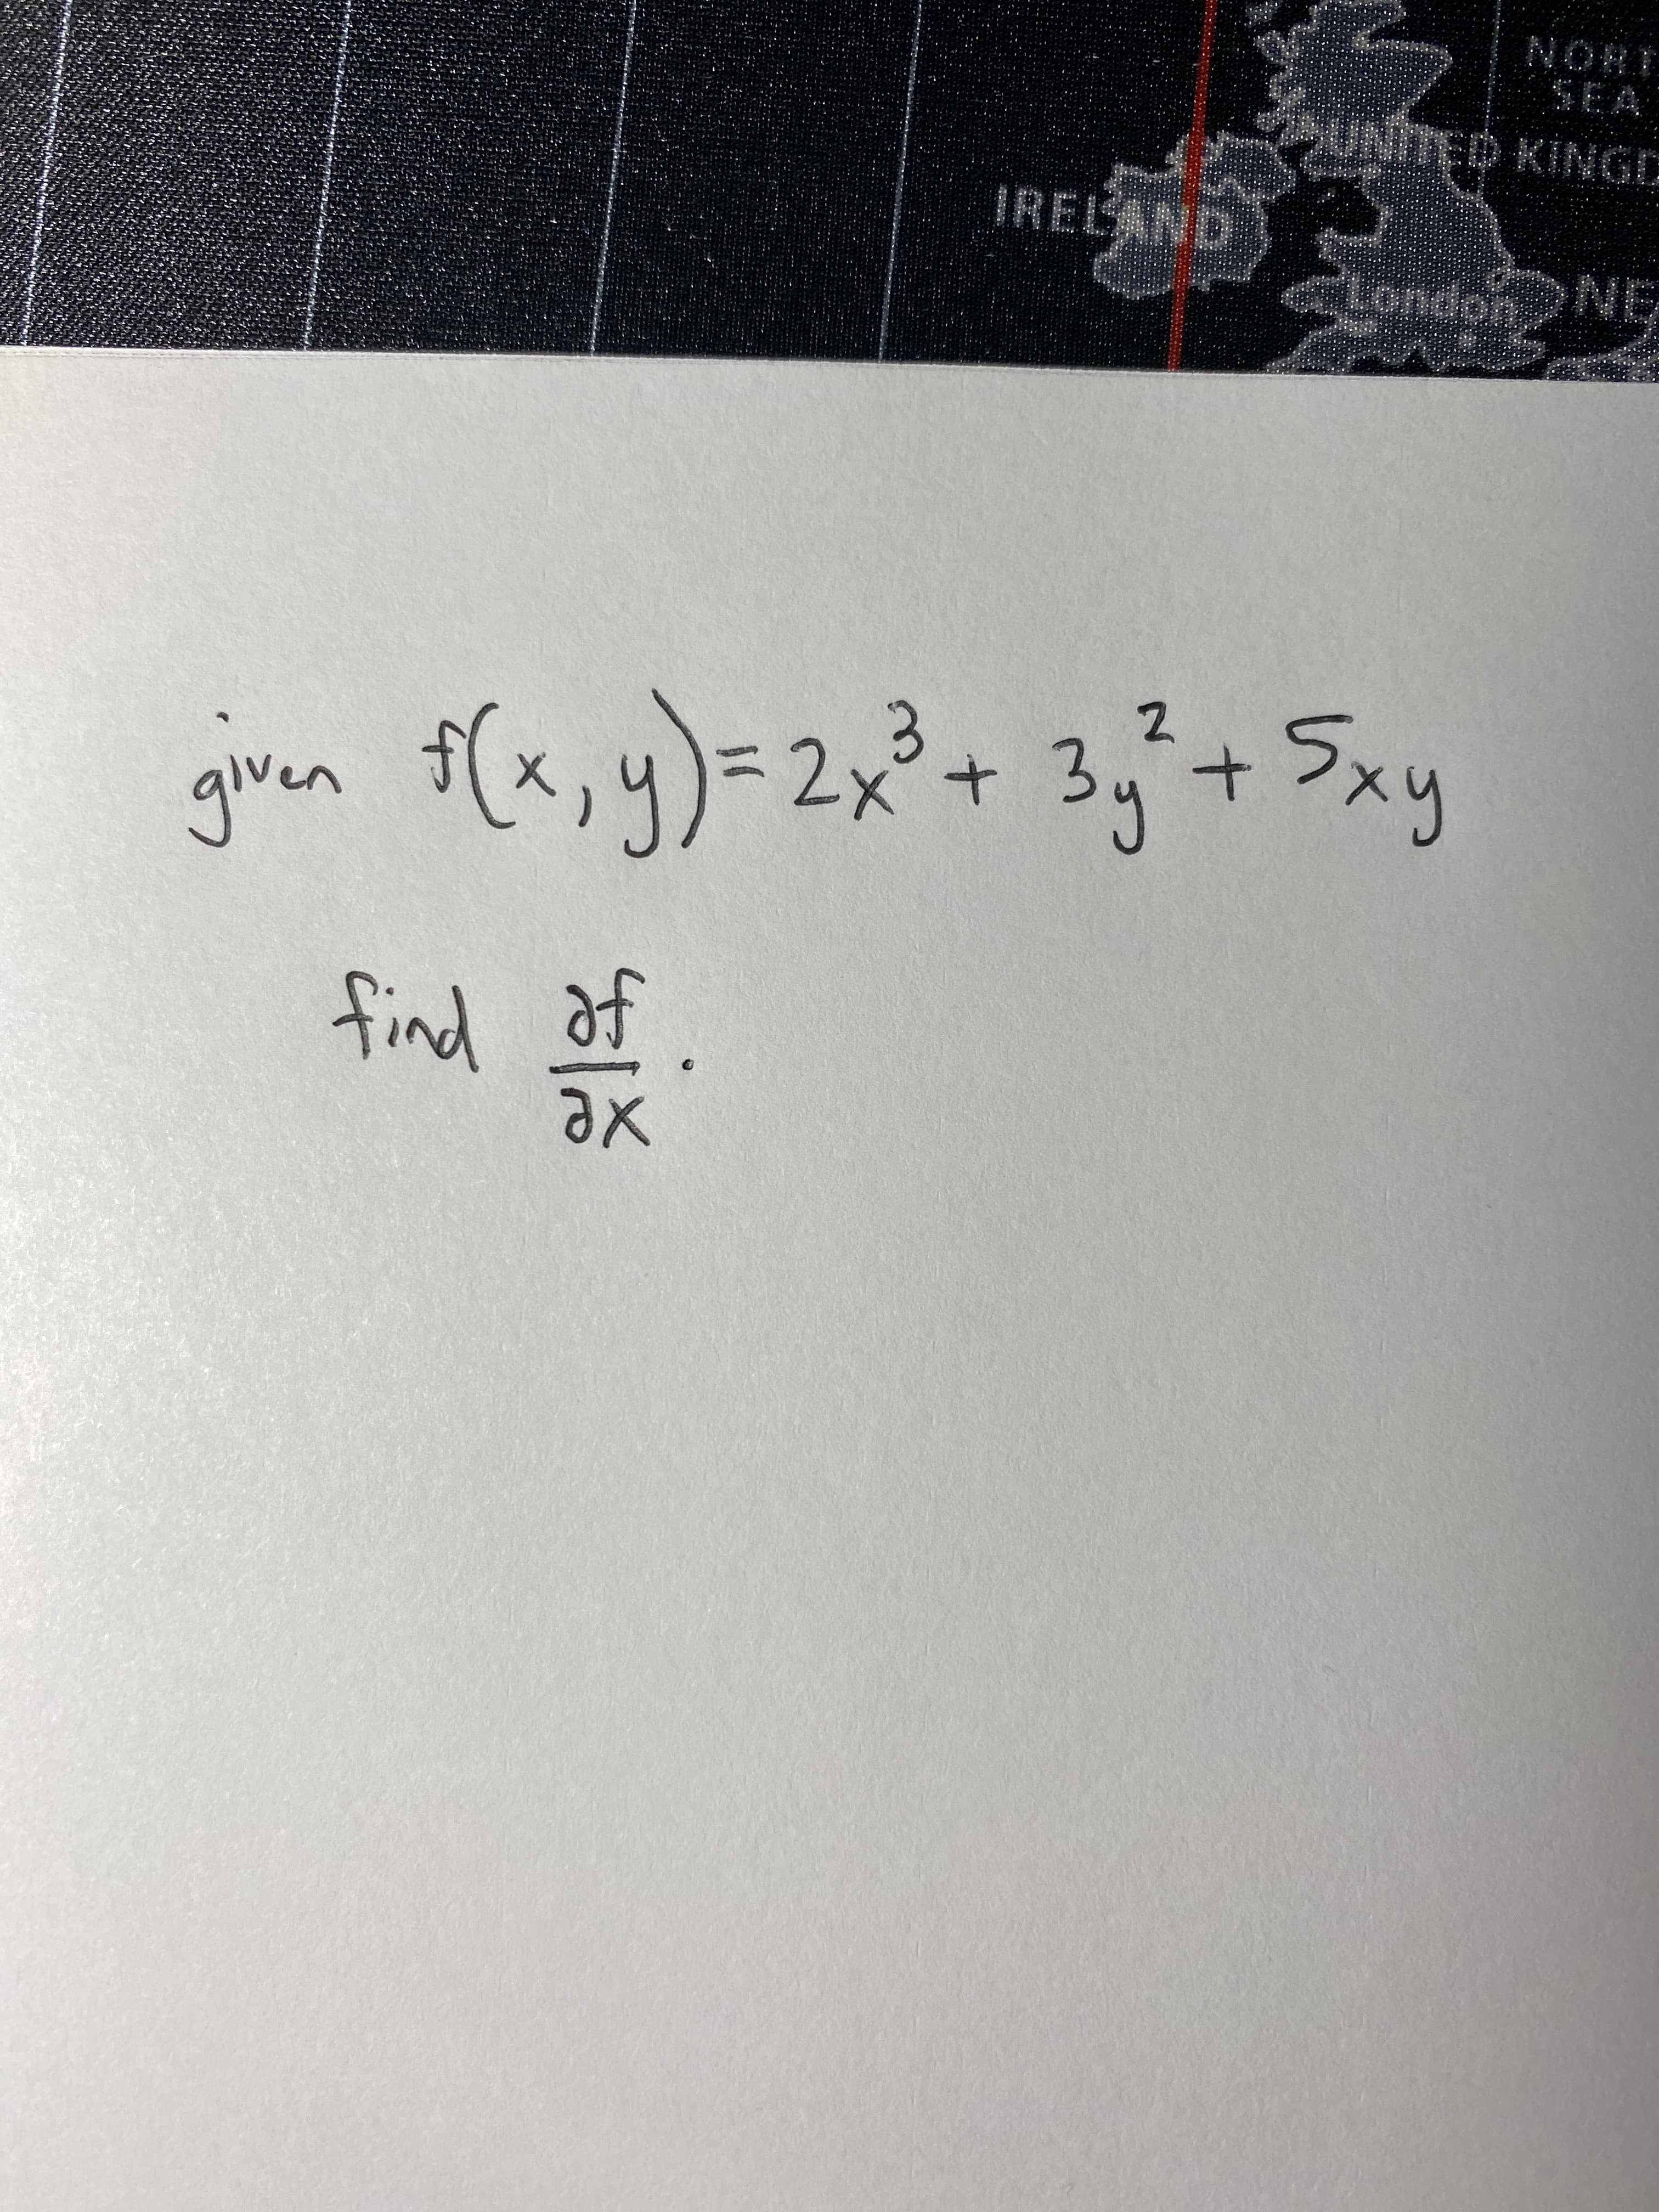 giver
yn f(५) ५) -2x + 3, + 2,
find of
ax
